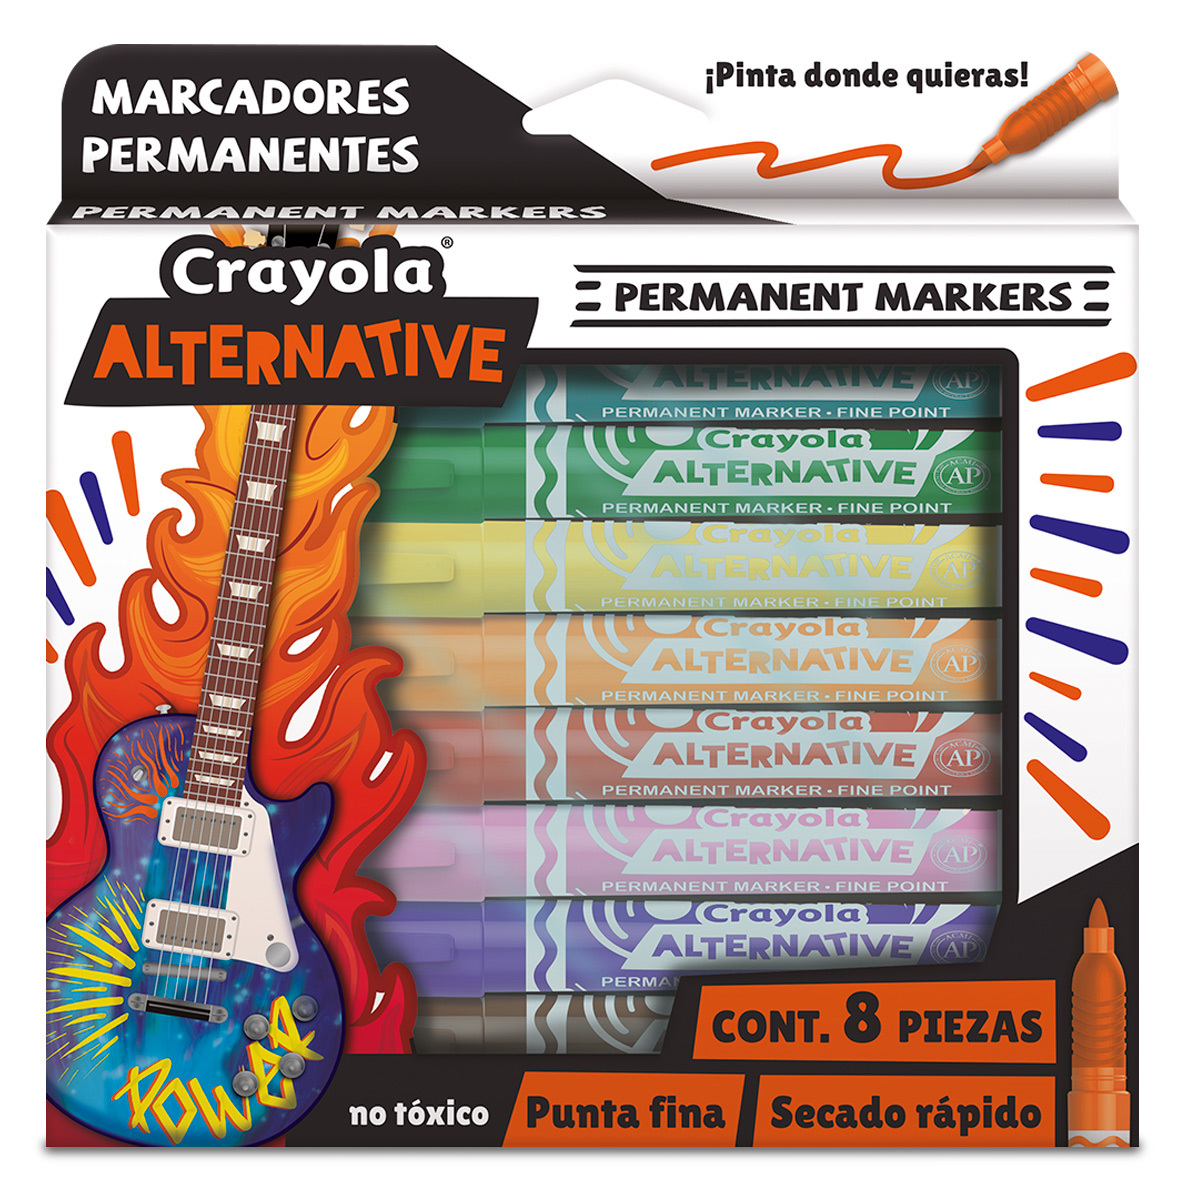 Marcadores Permanentes Crayola Alternative / Punta Fina / 8 piezas